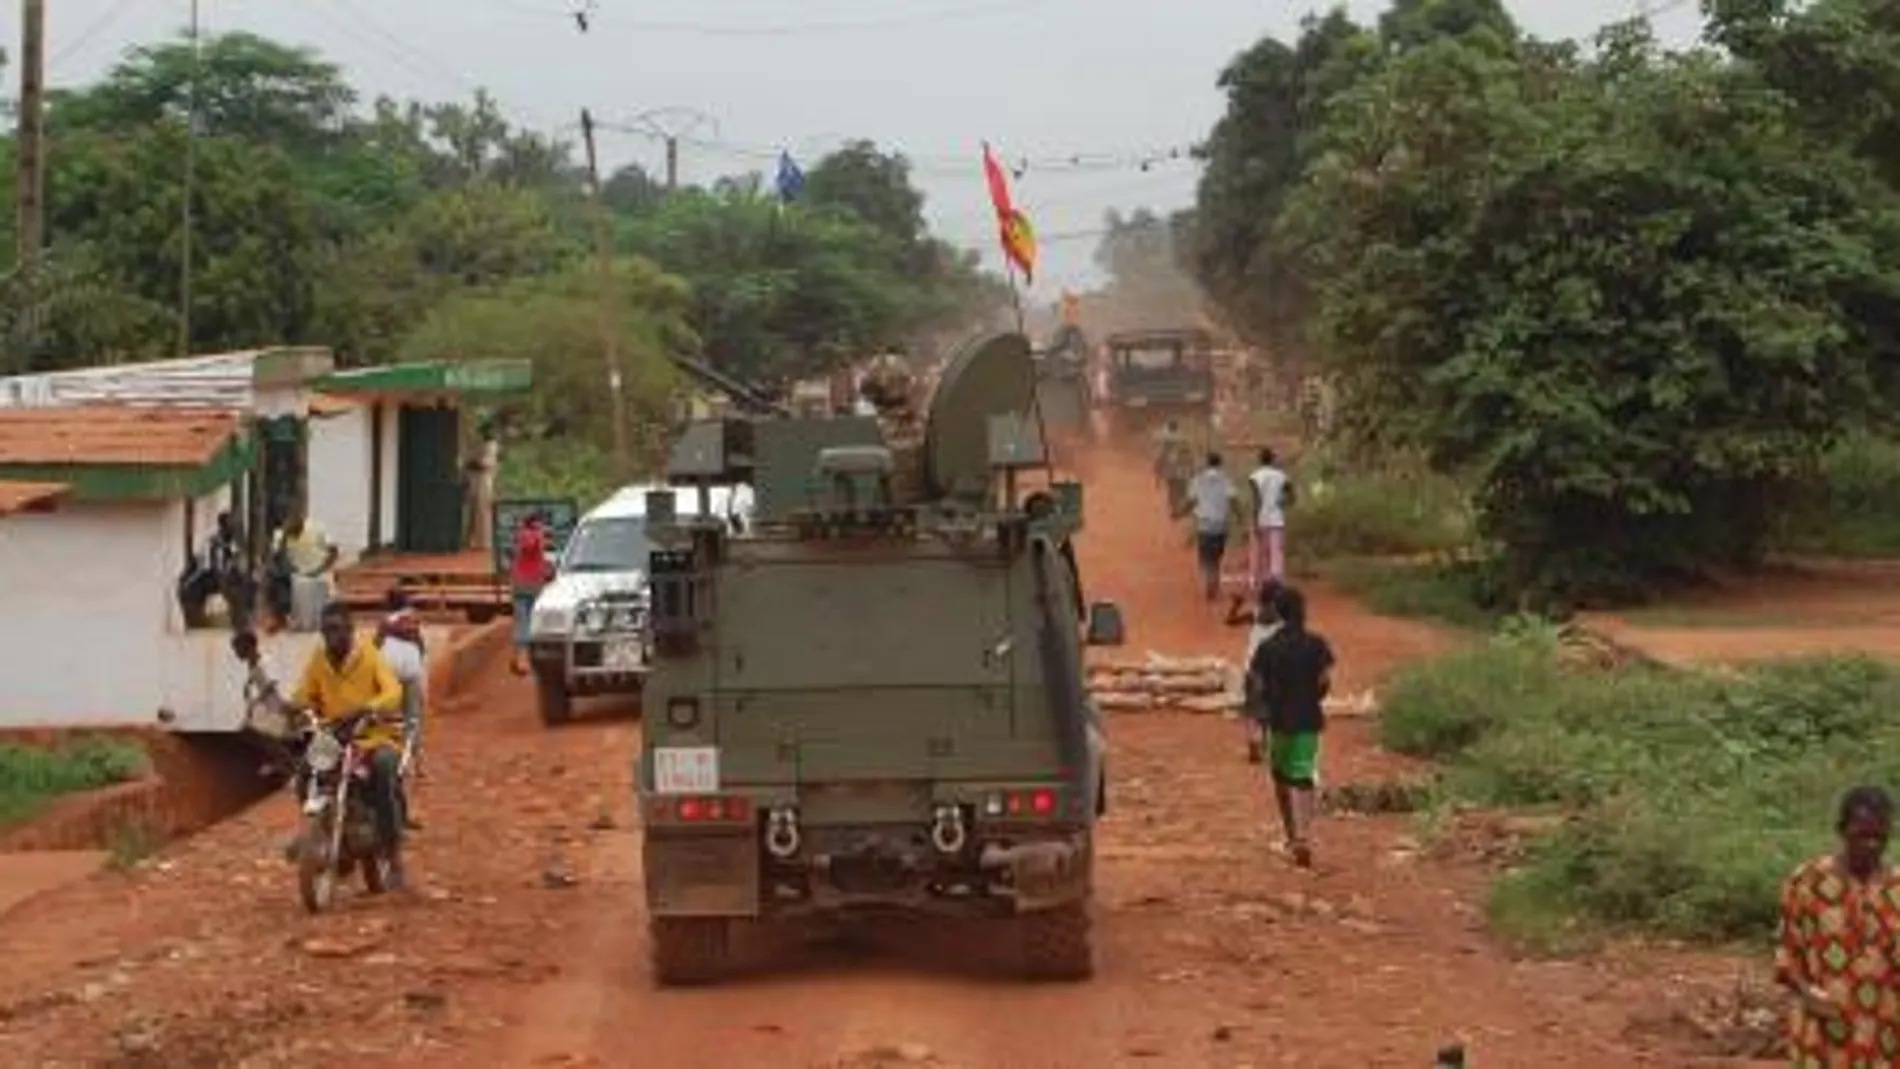 Un vehículo militar español patrulla por la ruta “Whisky” en Bangui